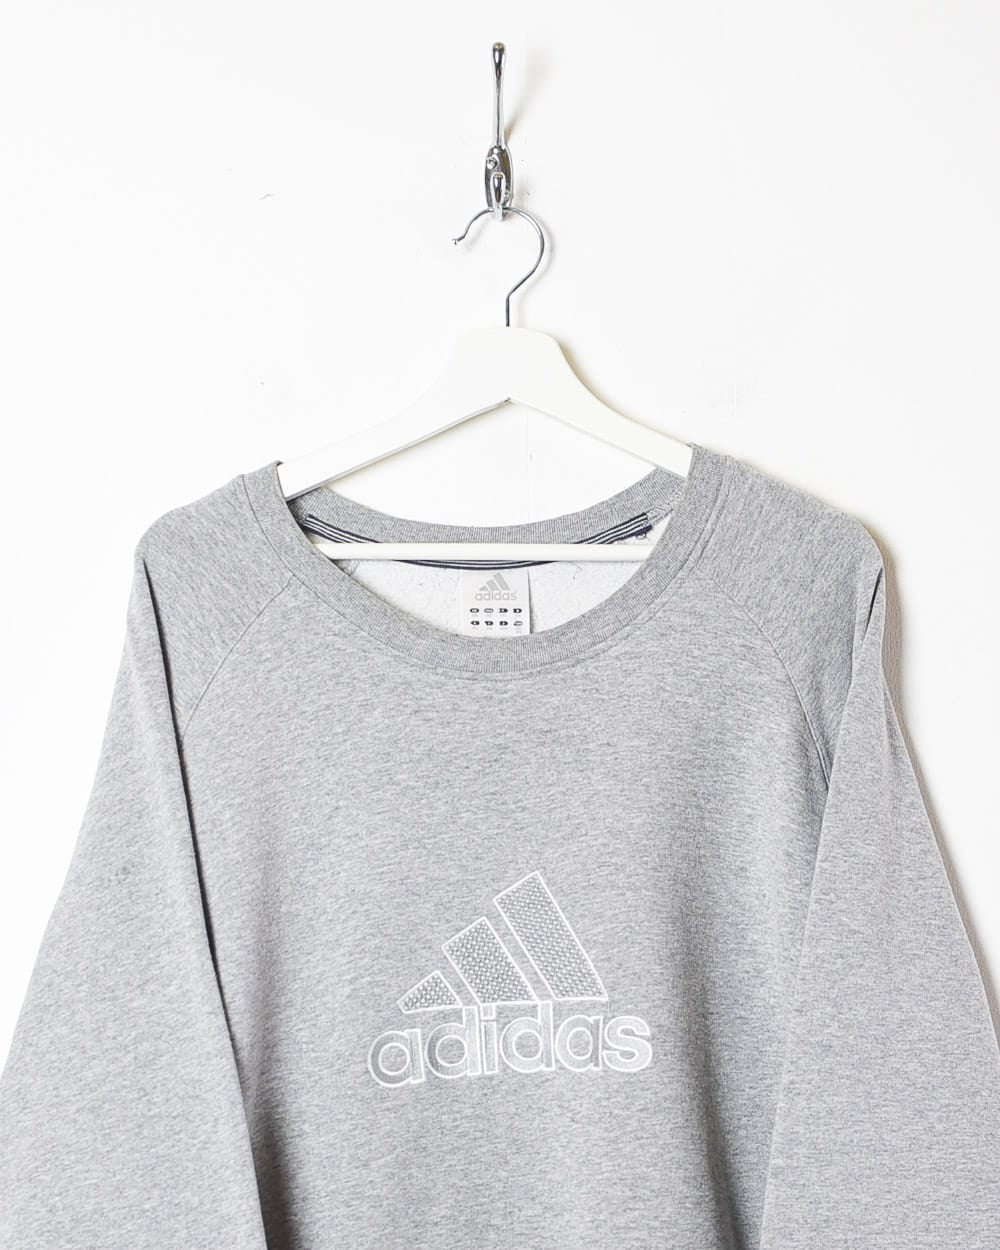 Stone Adidas Sweatshirt - XX-Large